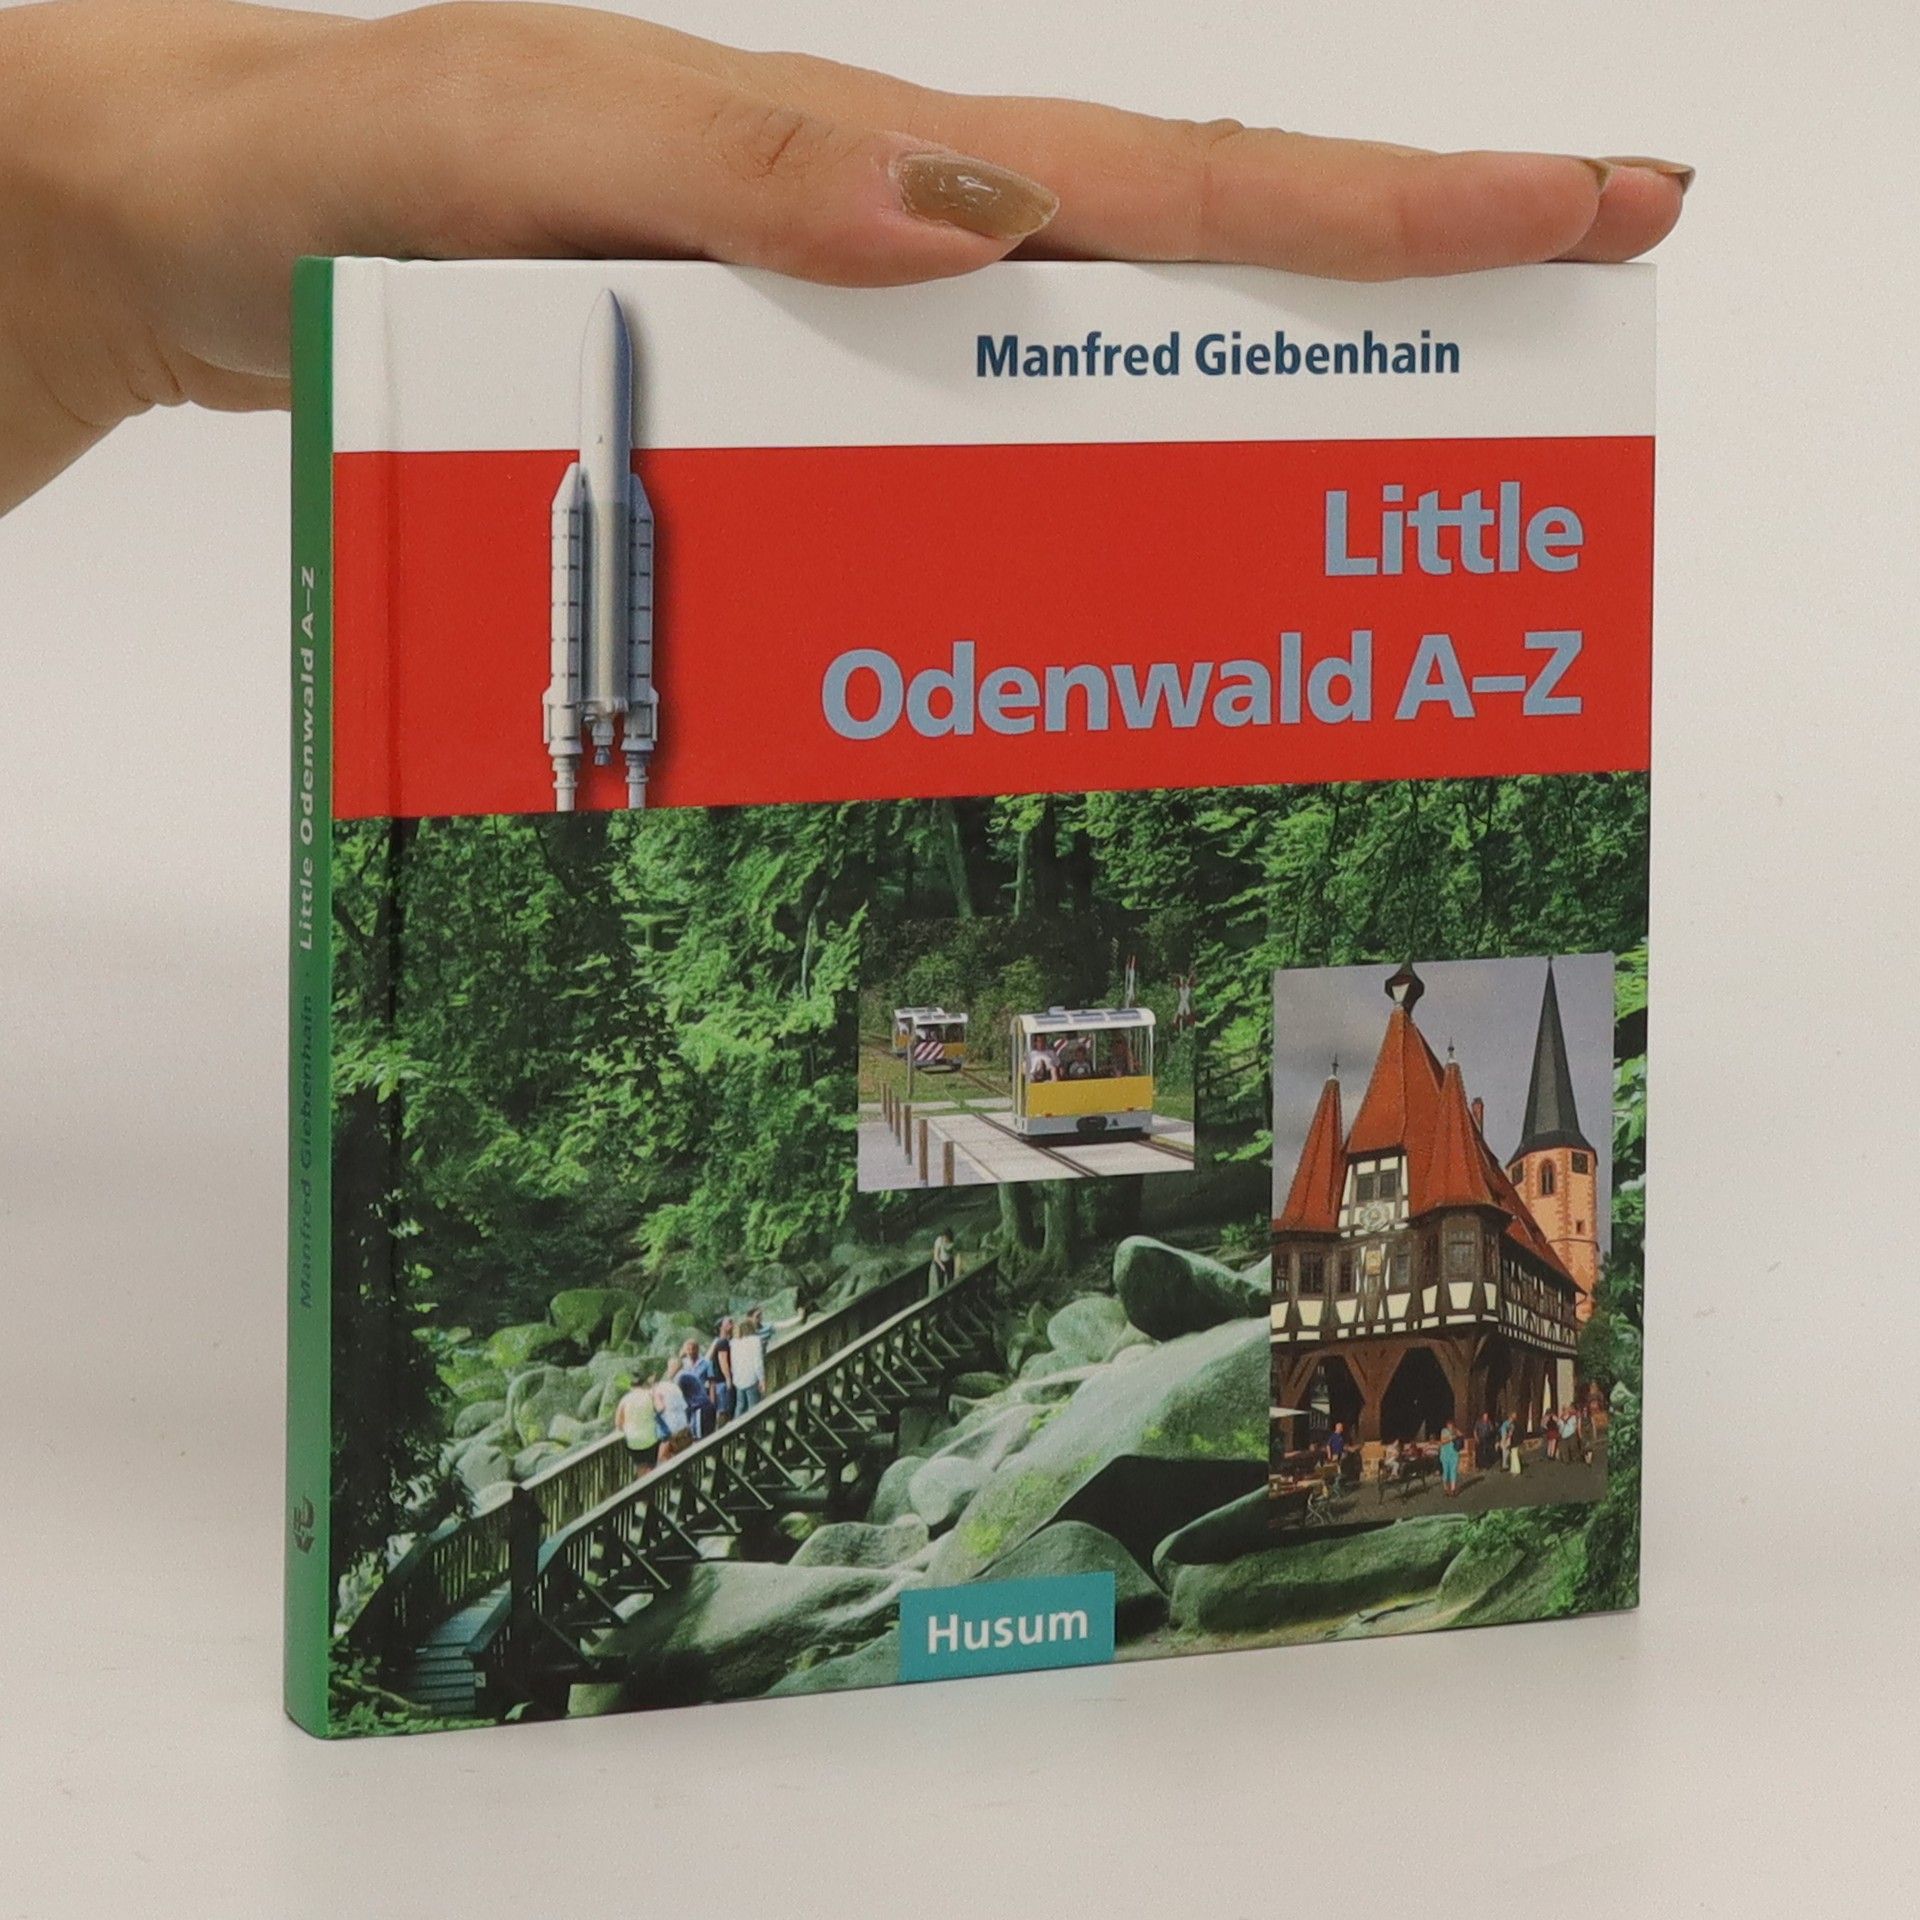 Little Odenwald A-Z - Manfred Giebenhain